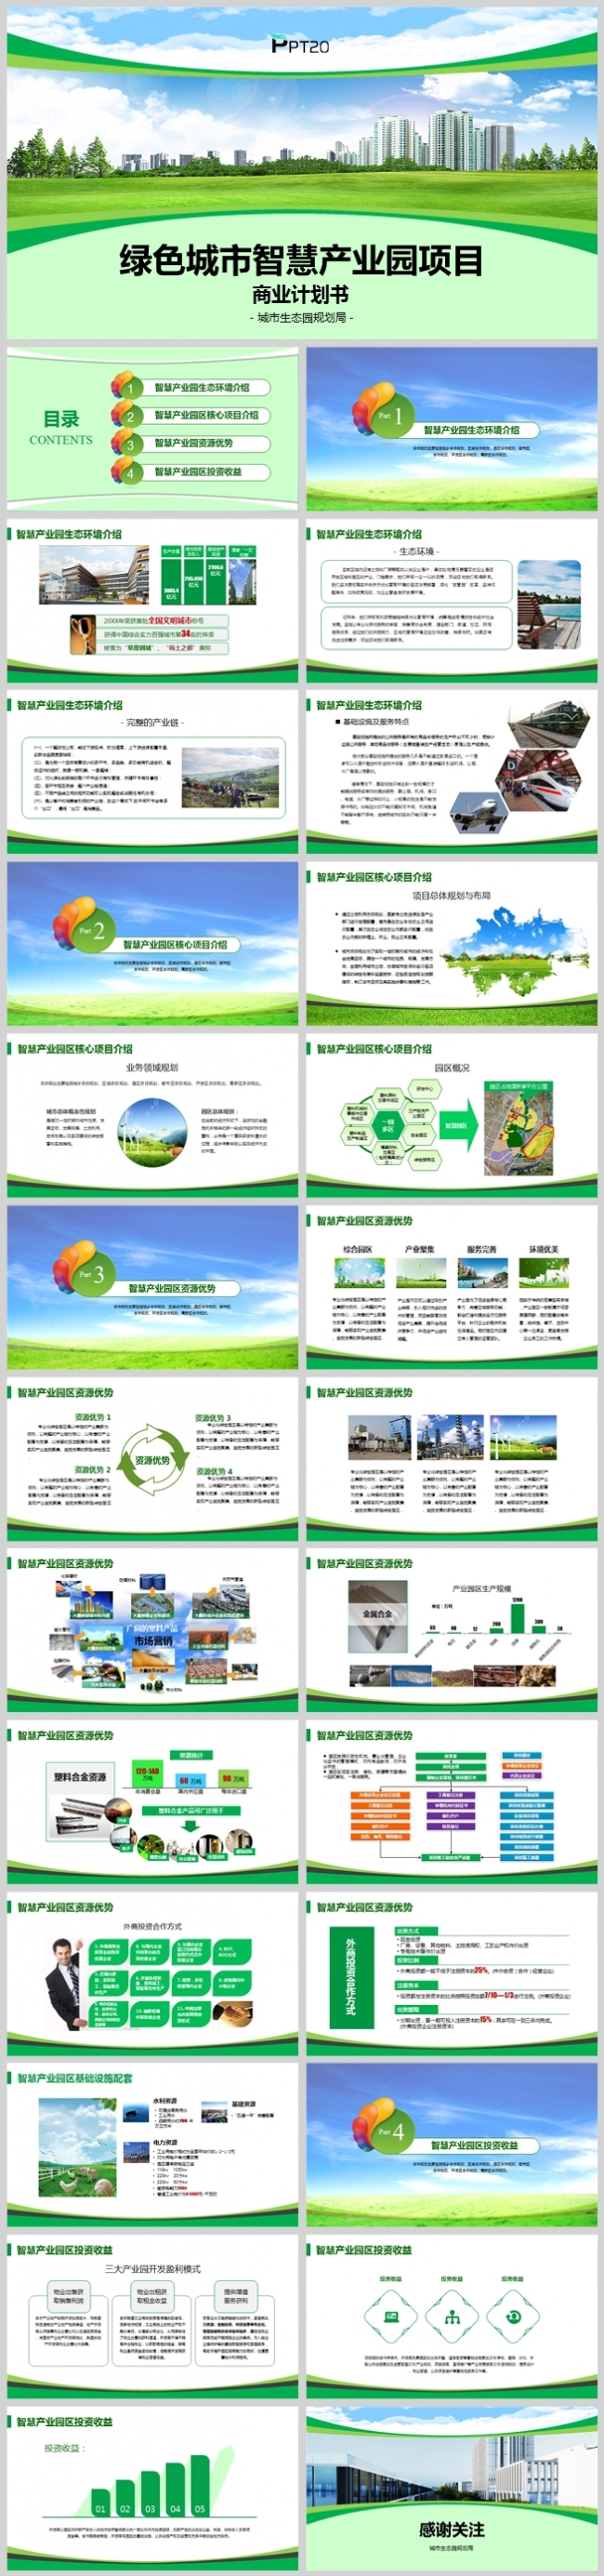 绿色高端生态产业园项目商业计划书PPT模版